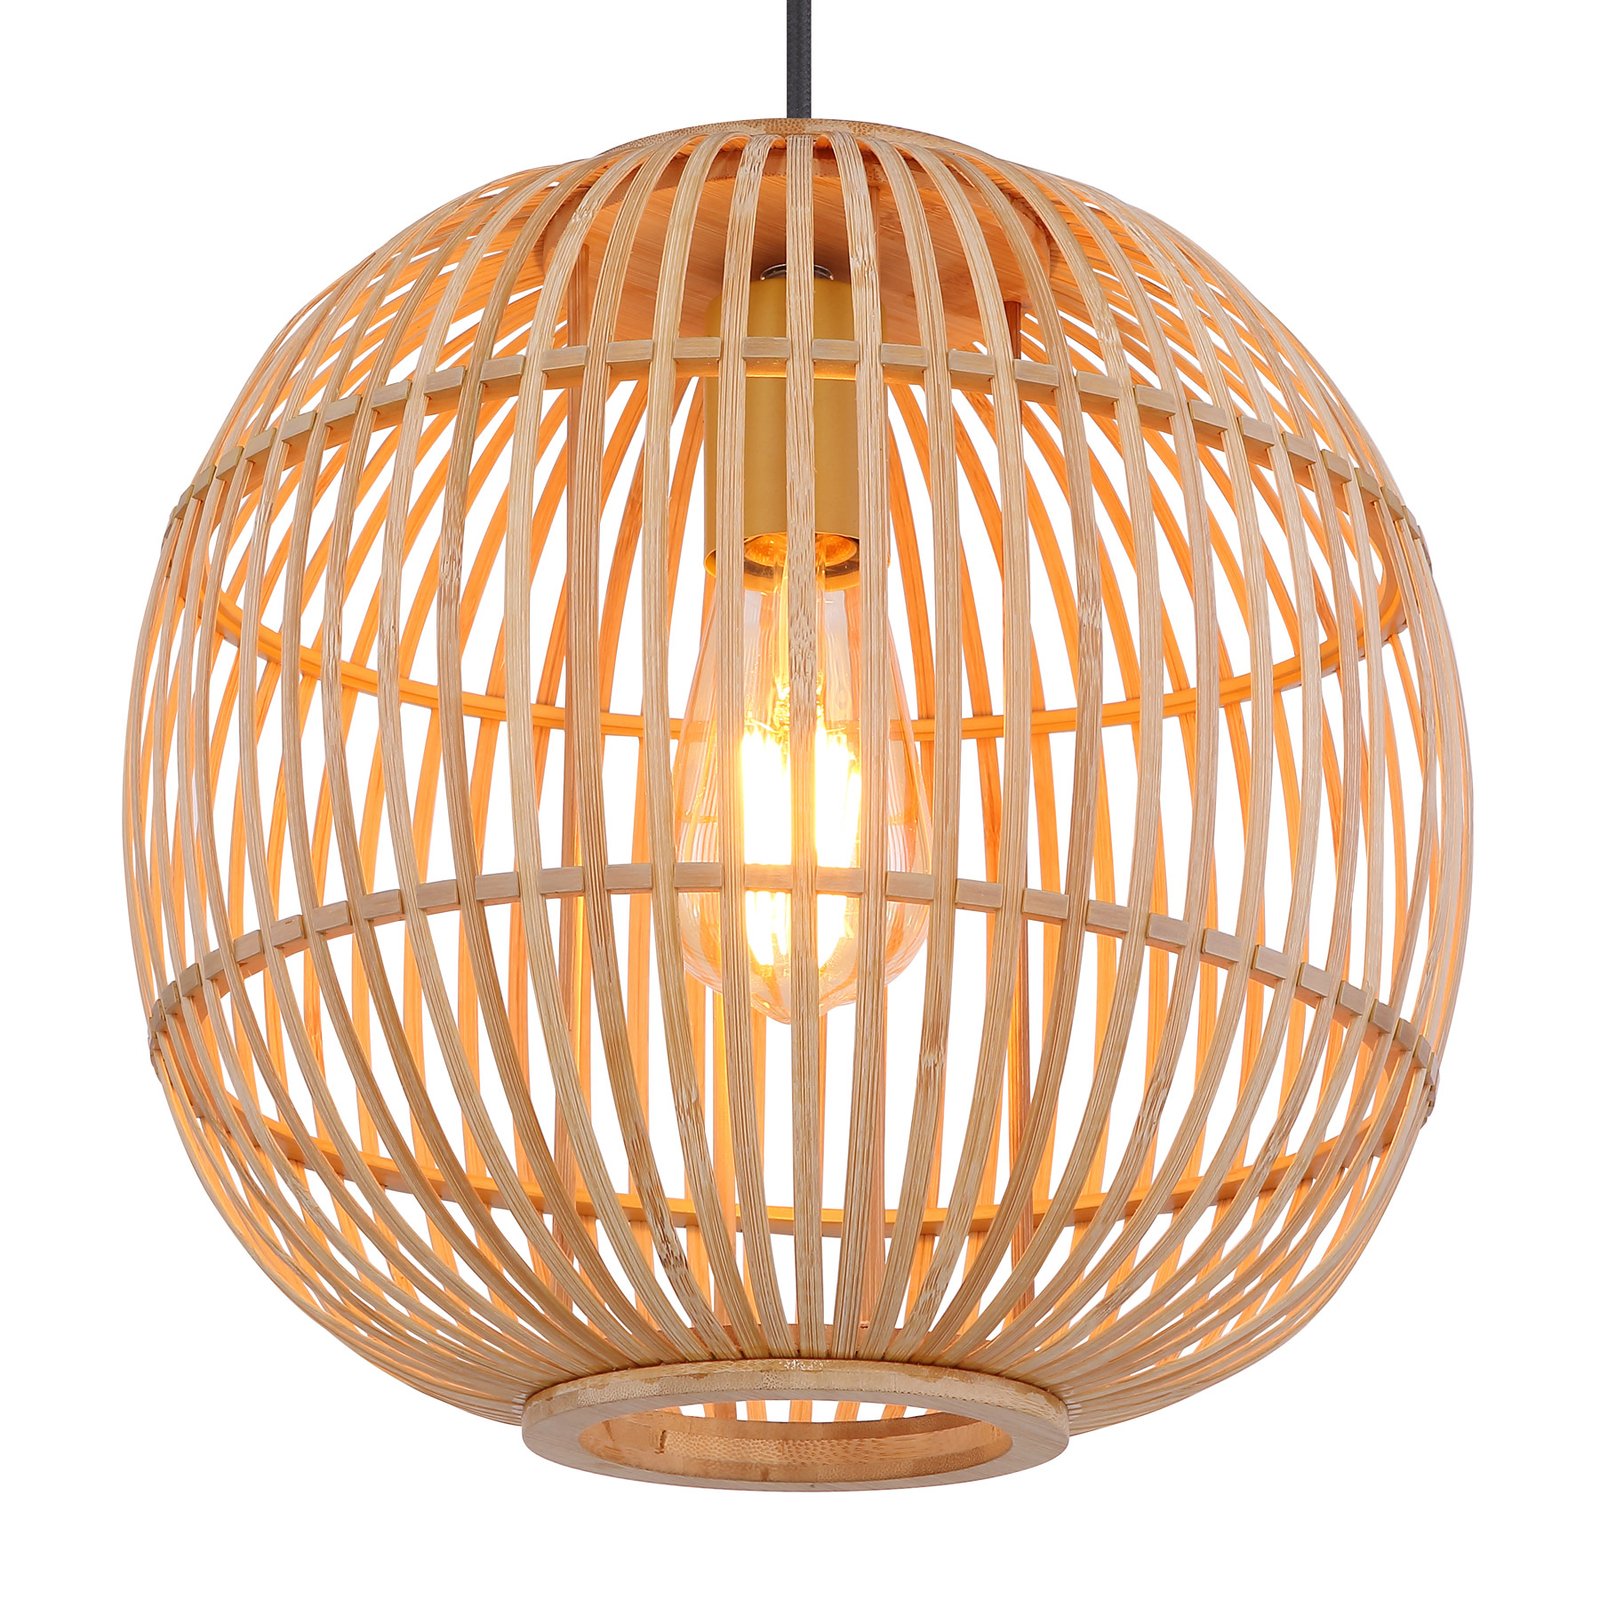 Hildegard hængelampe af bambus, Ø 30 cm